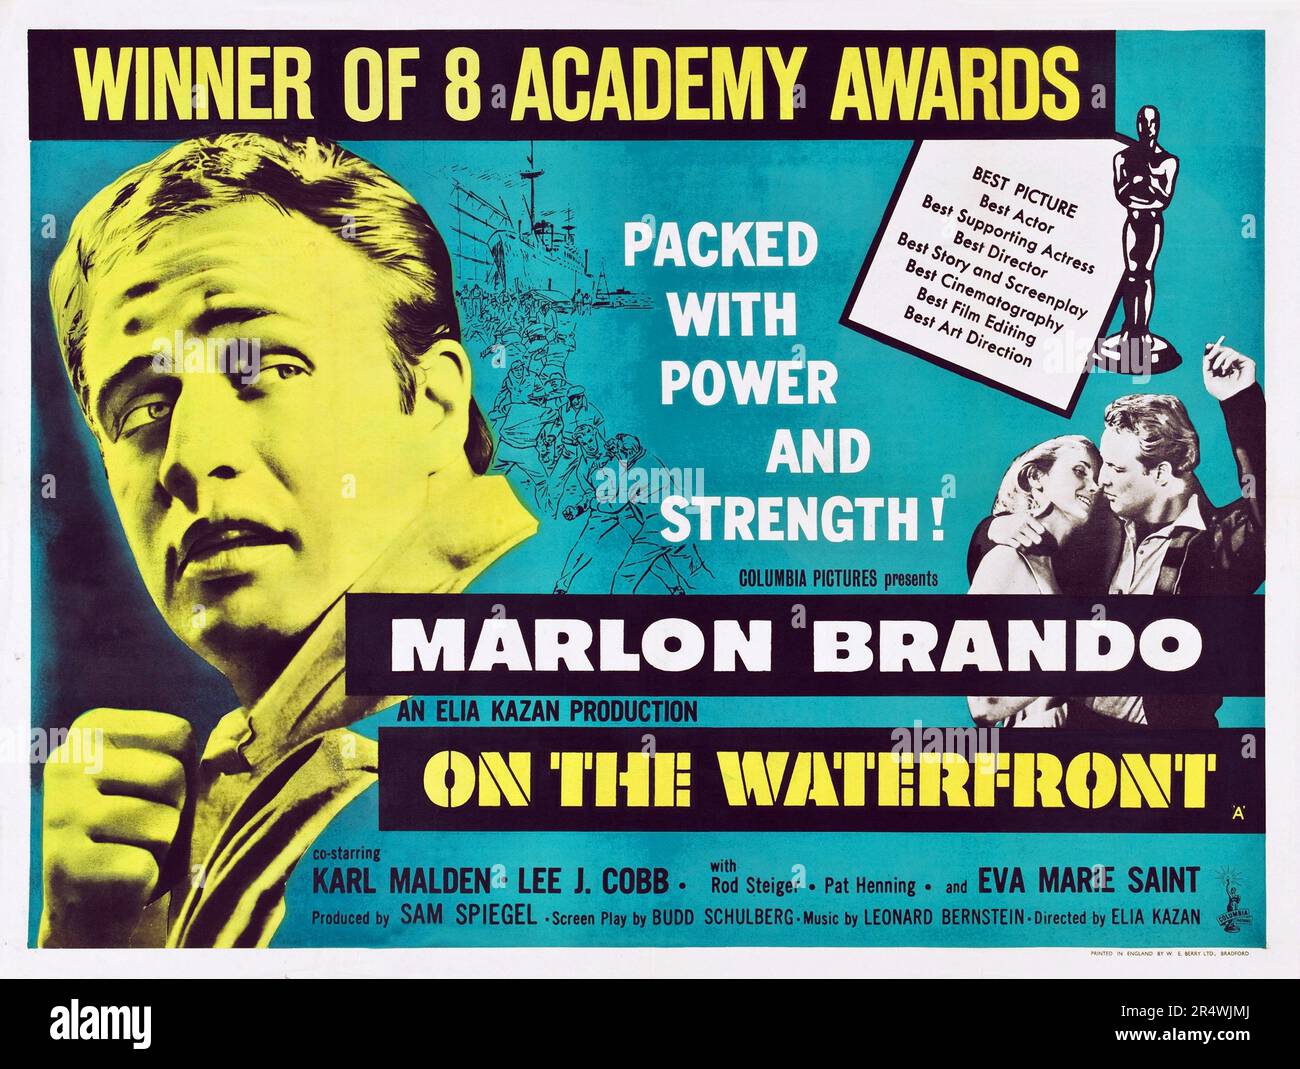 Sur le front de mer est un film américain de 1954 de l'Union européenne à propos de la violence et de la corruption chez les débardeurs. Réalisé par Elia Kazan avec Marlon Brando et le film est basé sur la criminalité sur le bord de l'eau - une série d'articles publiés dans le New York Banque D'Images